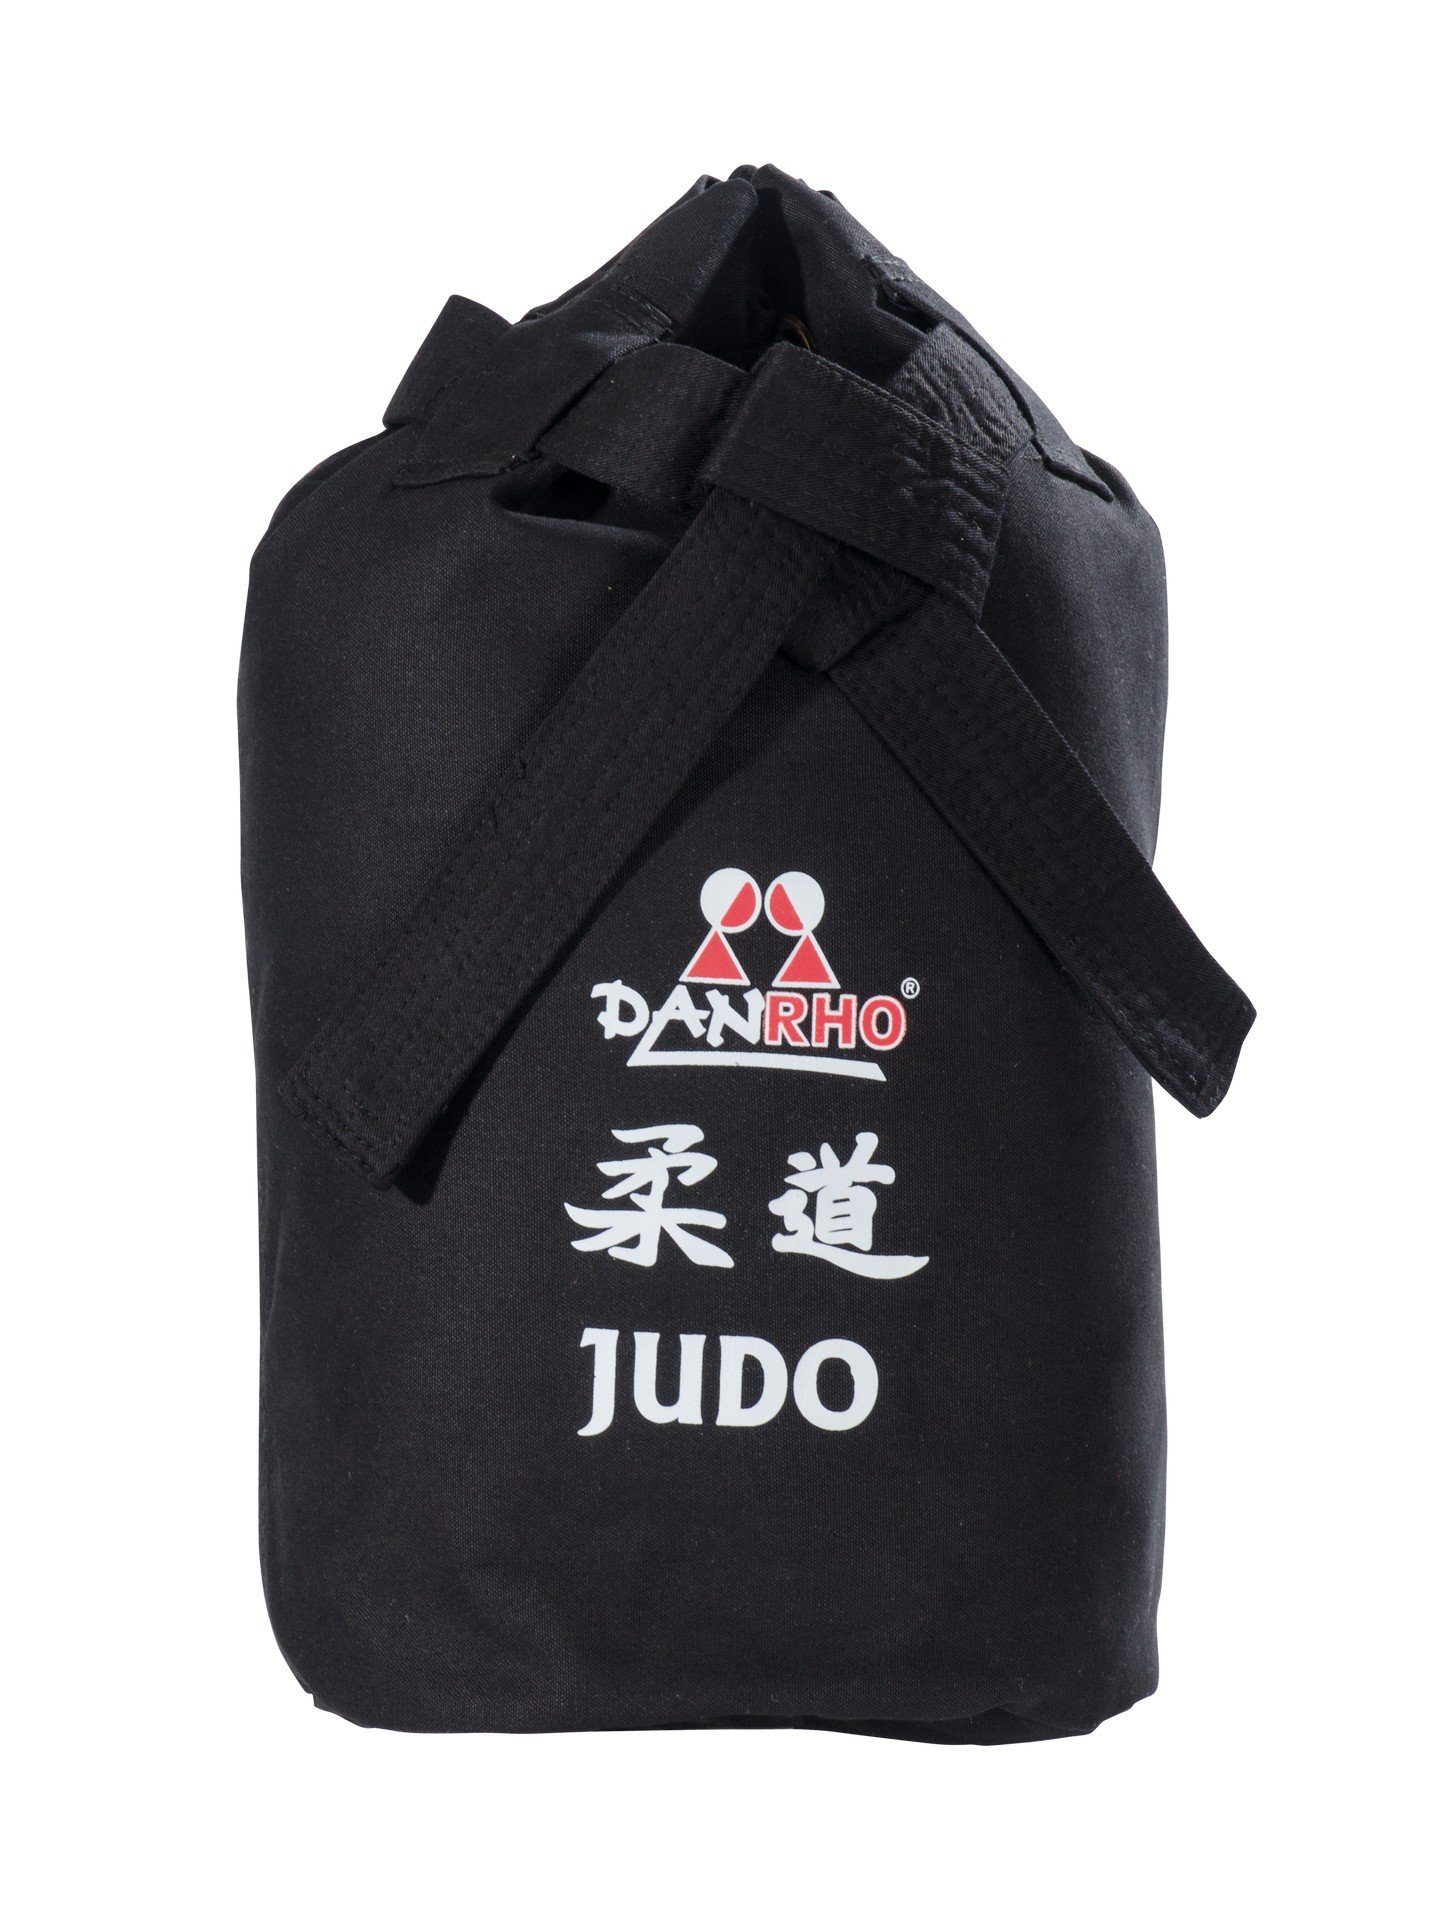 Schnellverschluß), oder Beutel (Baumwolle, weiss, Danrho Judo Turnbeutel Kinder Budogürtel Seesack weiß Kordelzug Optik Rucksack Sporttasche schwarz